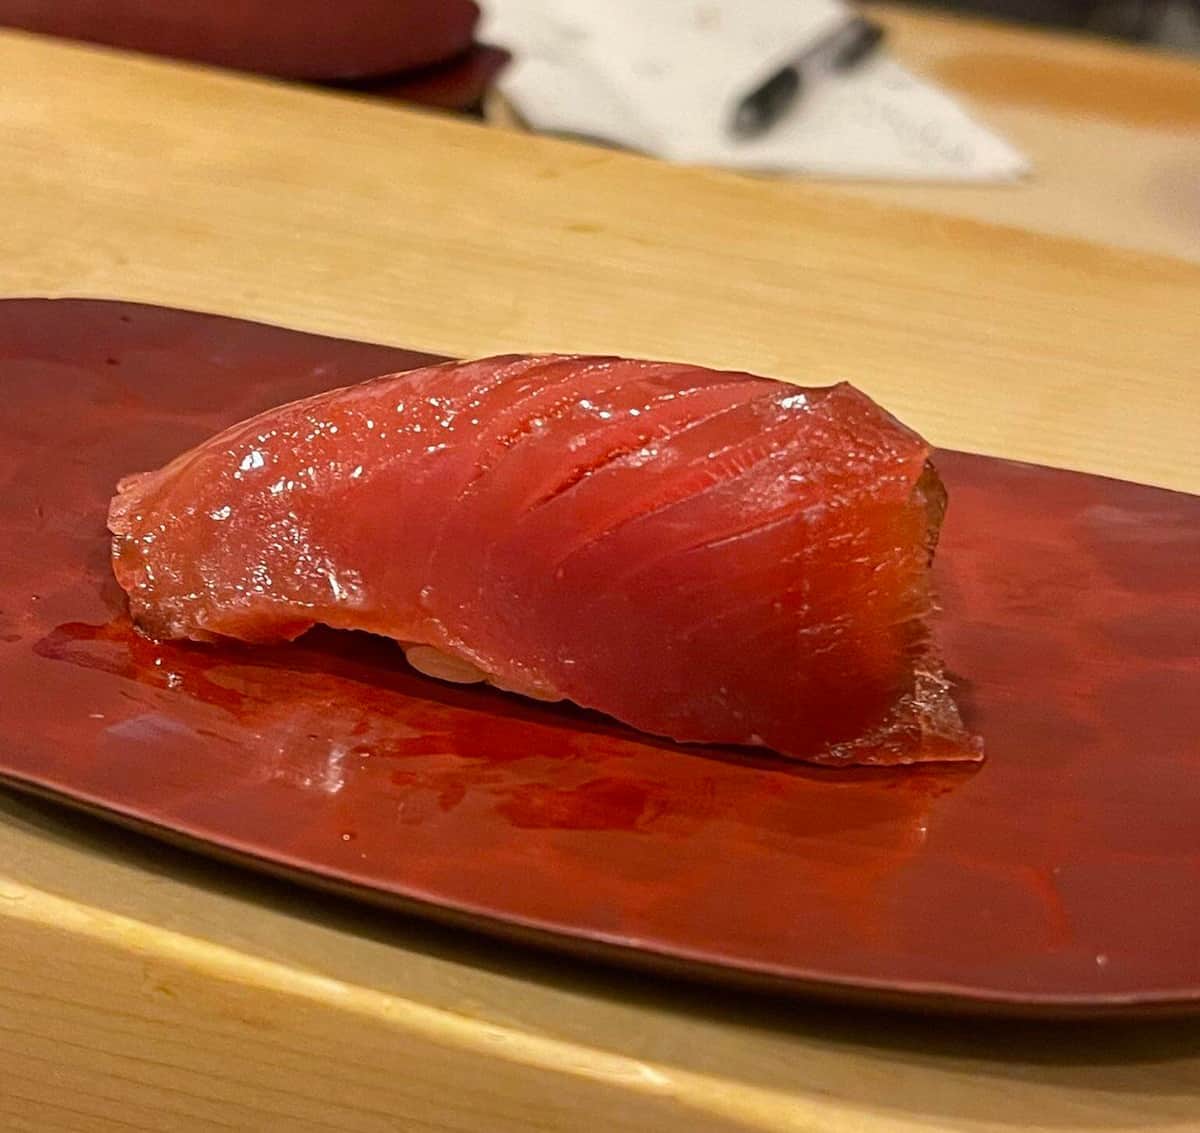 握り寿司に「セトリ」あり、しいたけ→カツオで「美味しさすごい」　店主明かす組み合わせの工夫